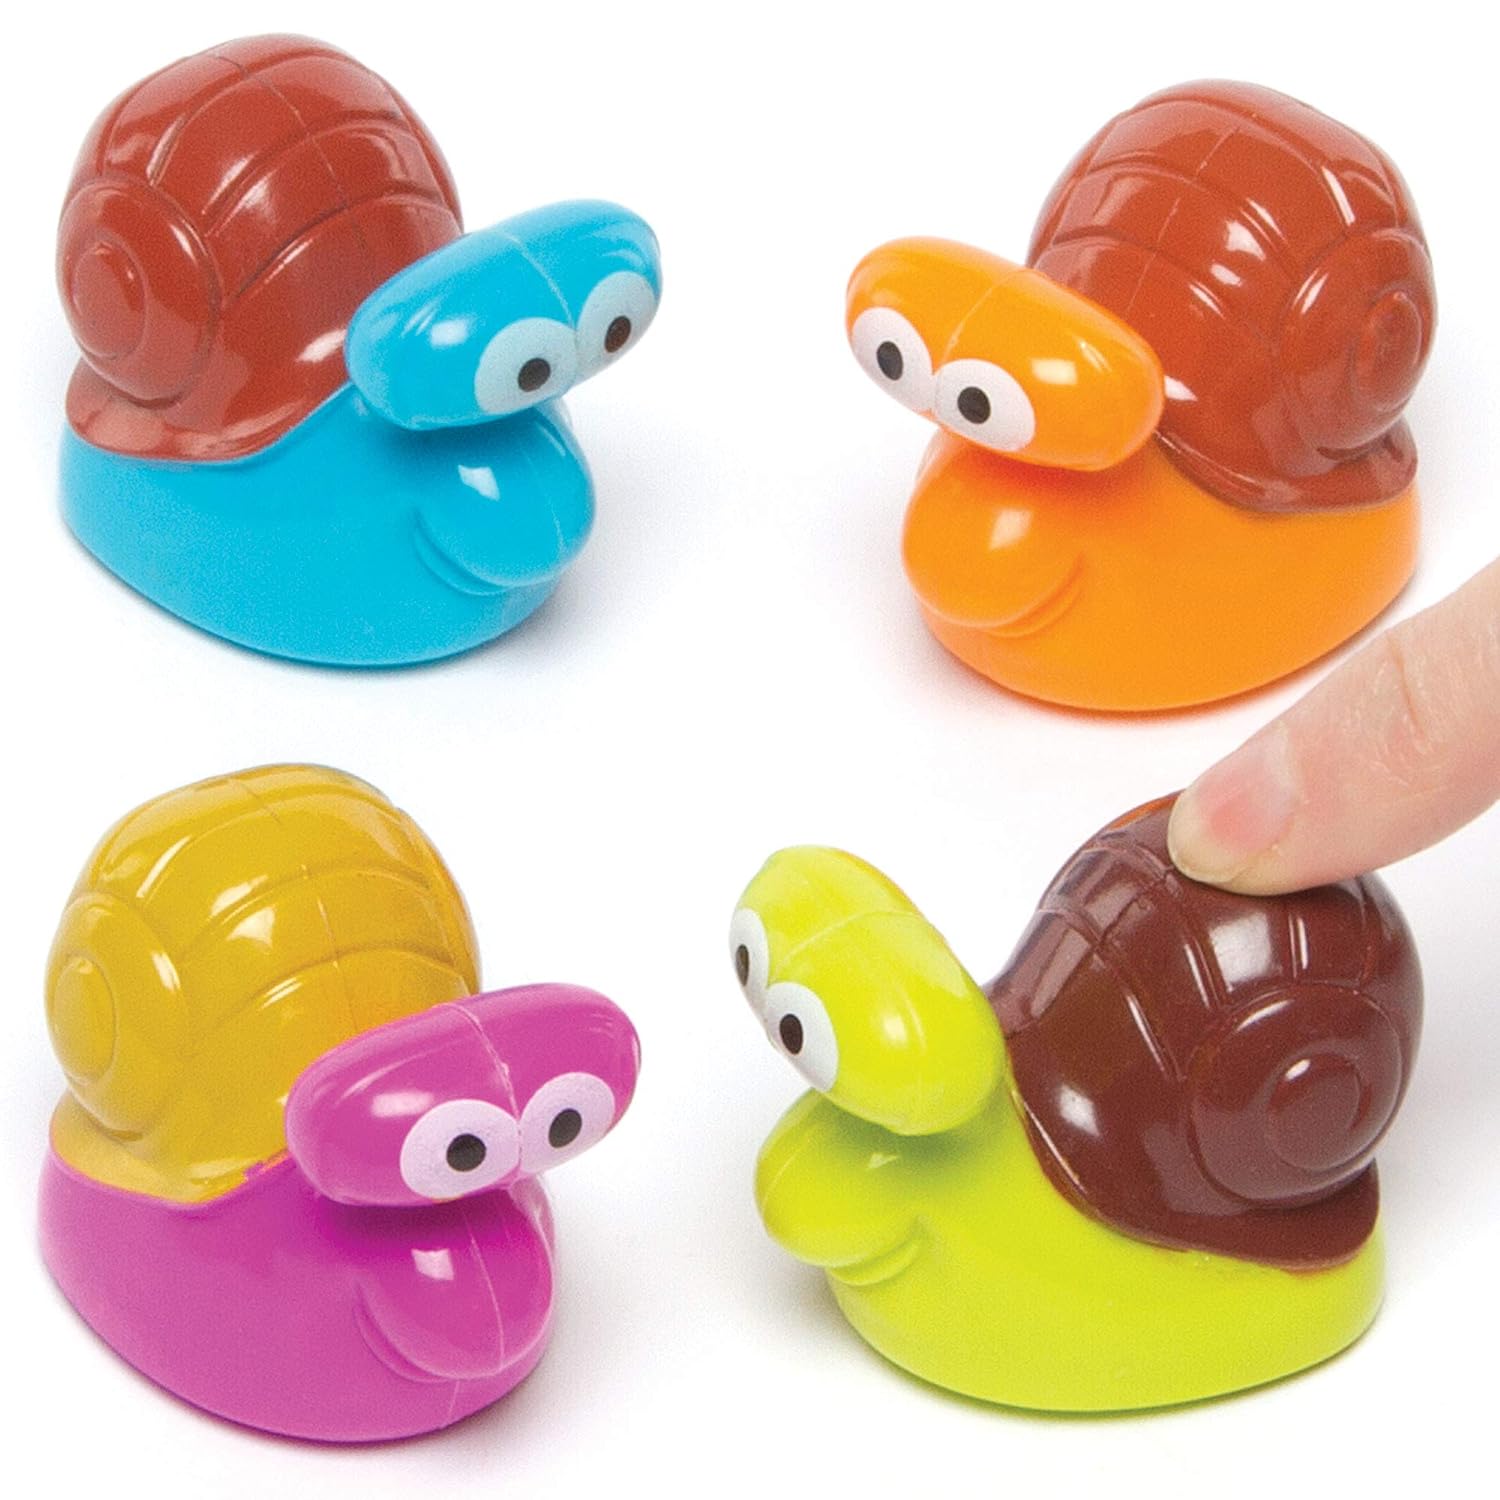 Escargots Friction Fun: Course Folle dans les Pochettes-Surprises!